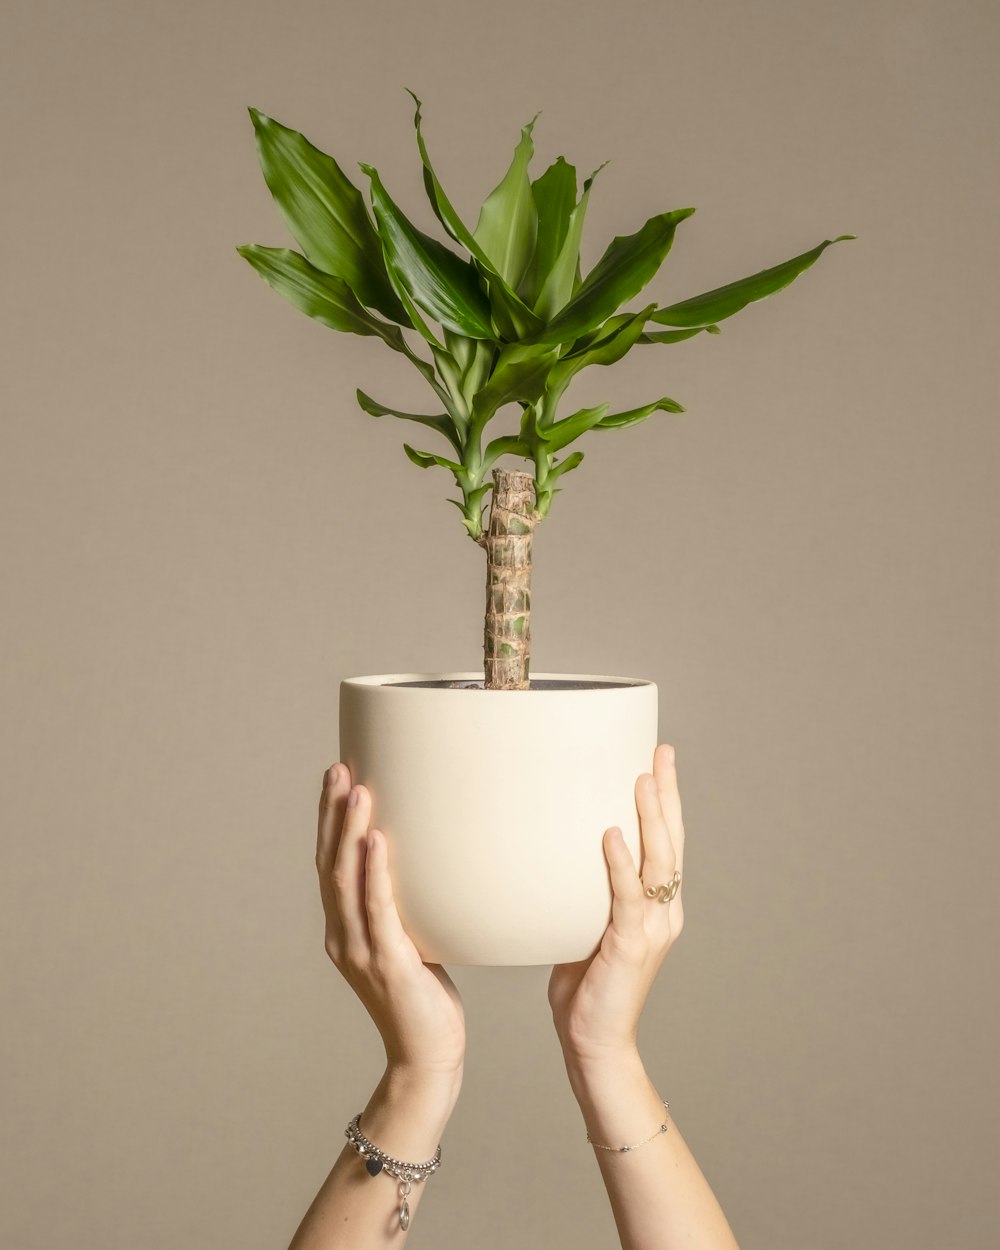 une personne tenant une plante en pot dans ses mains